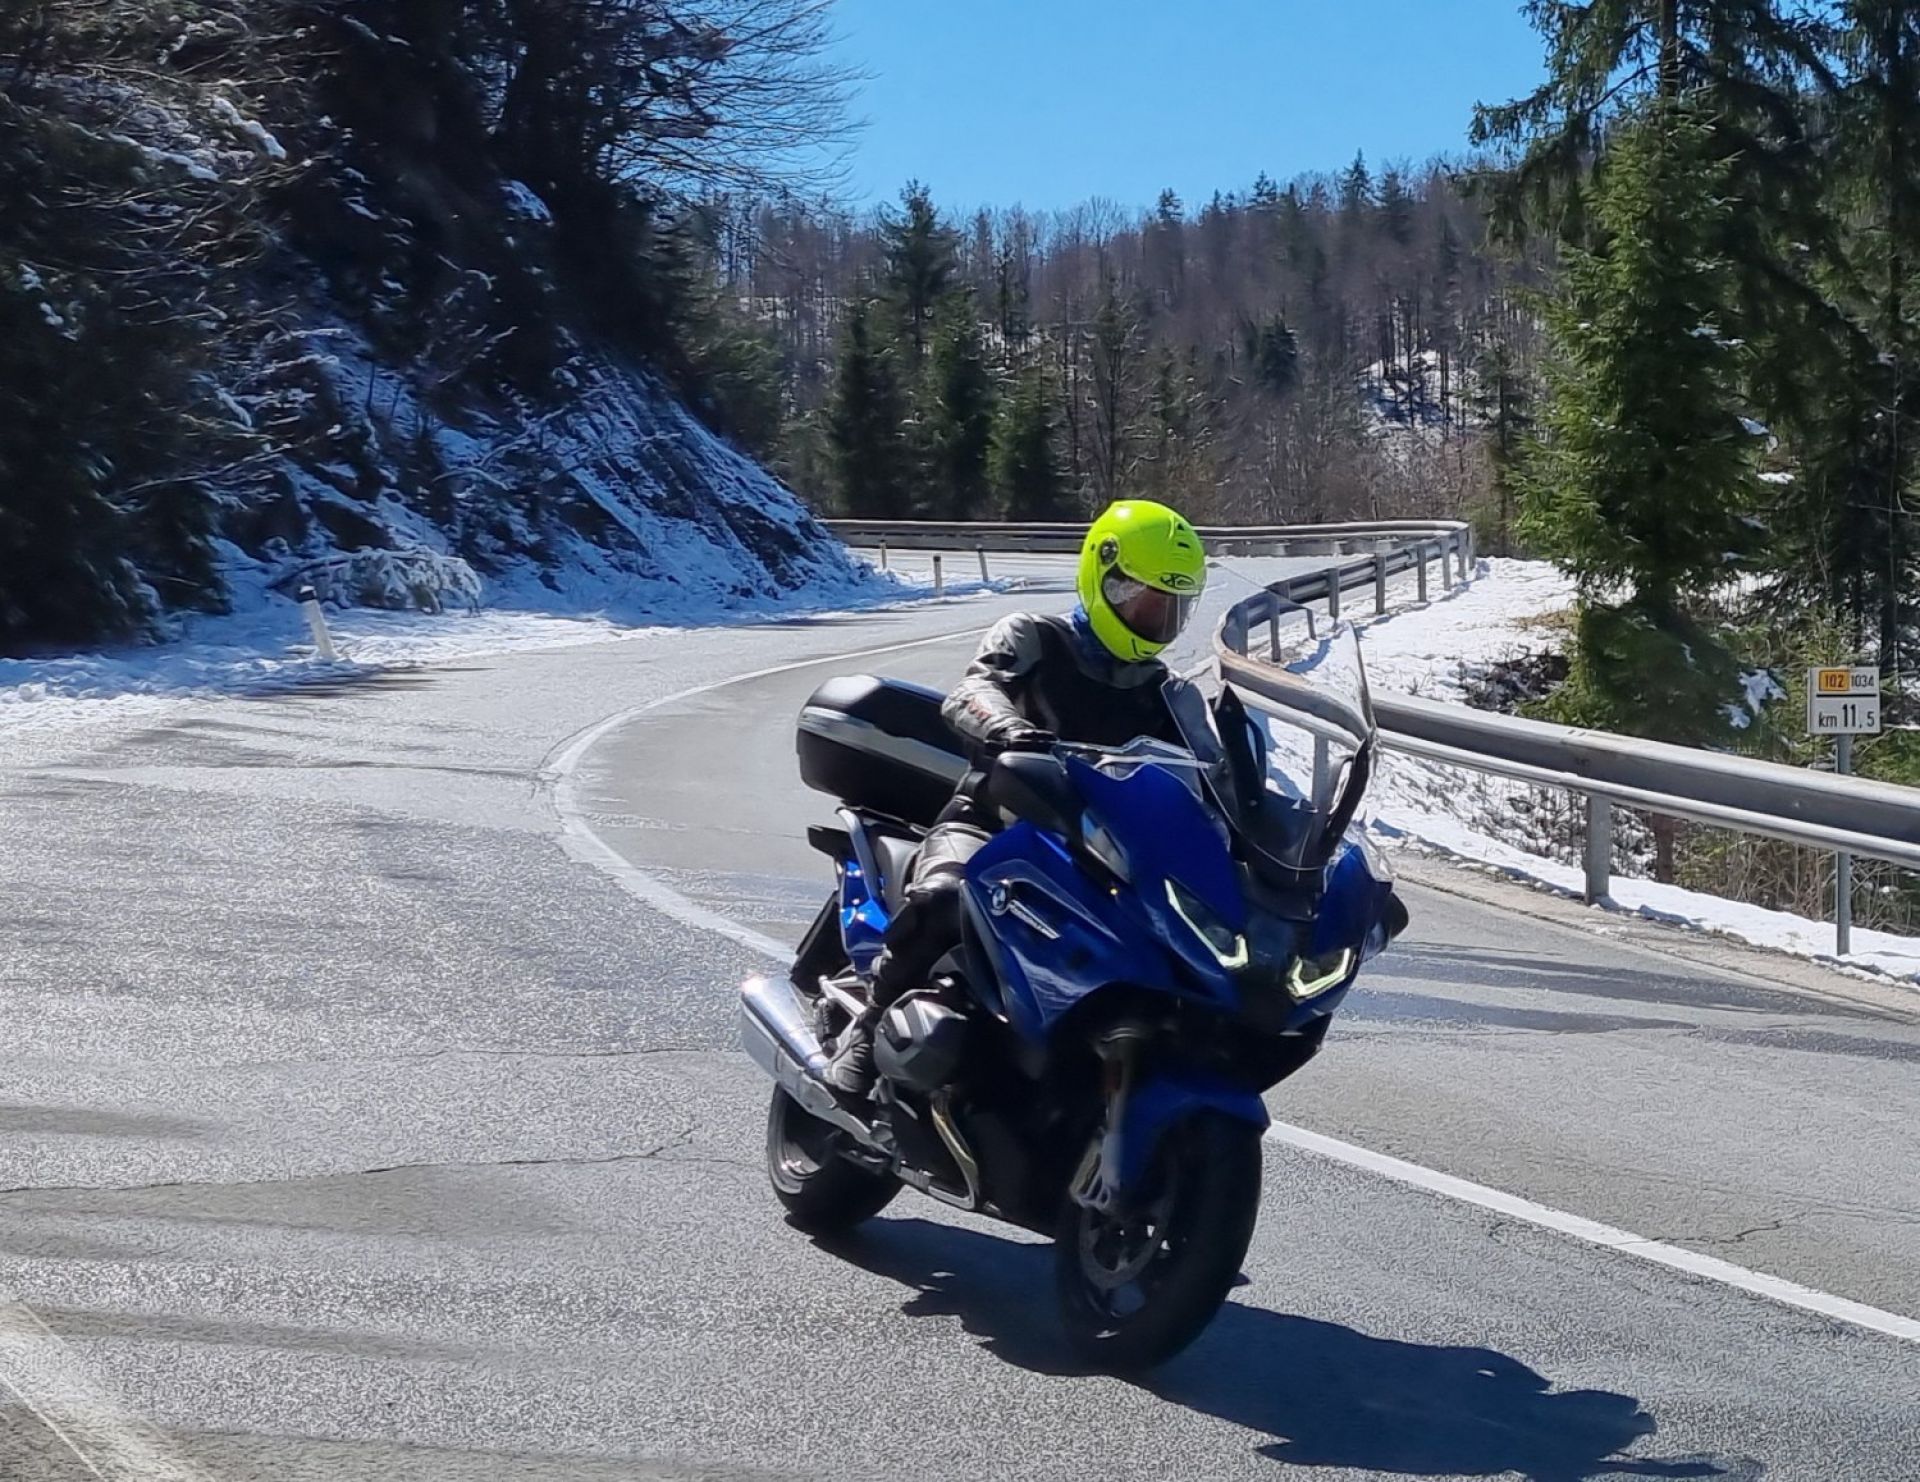 adriatic moto tours facebook